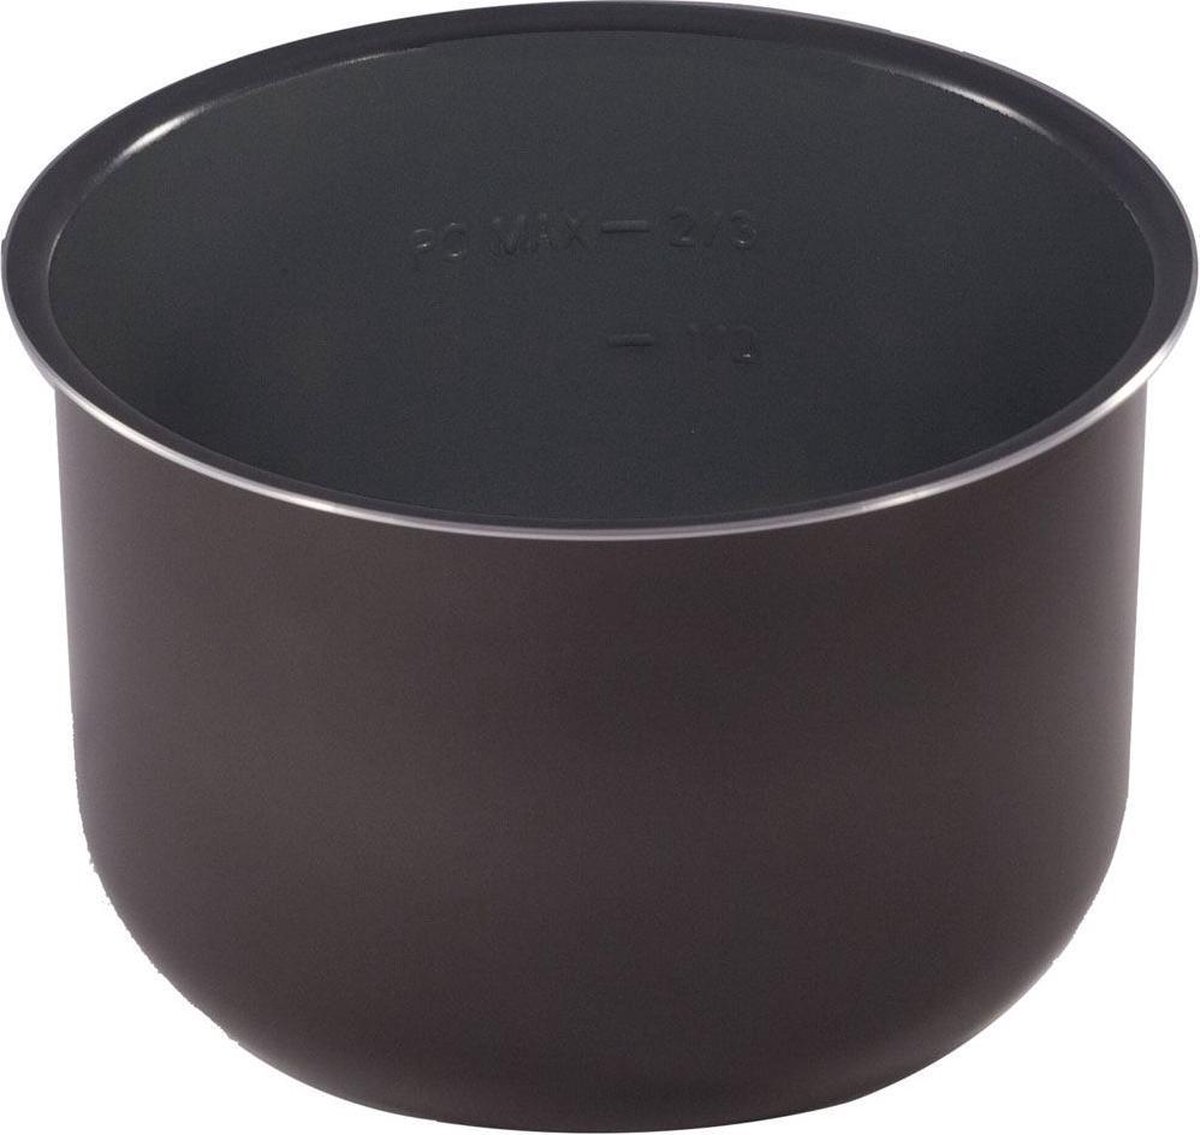 Instant Pot binnen pan keramisch (6 liter) - Instant Pot